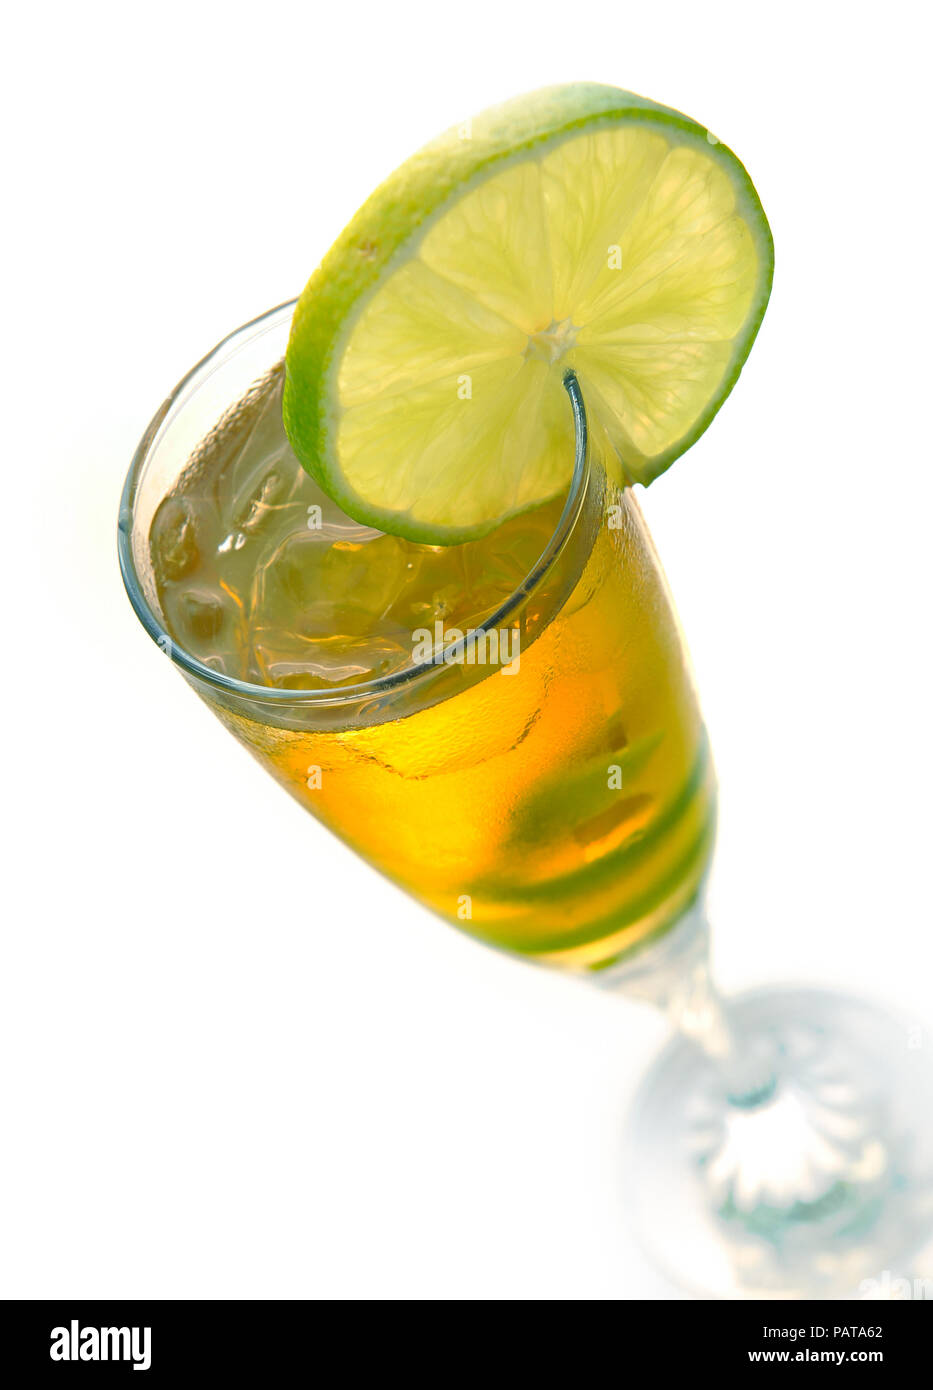 Cocktail giallo in vetro con calce twist su un bianco Foto Stock